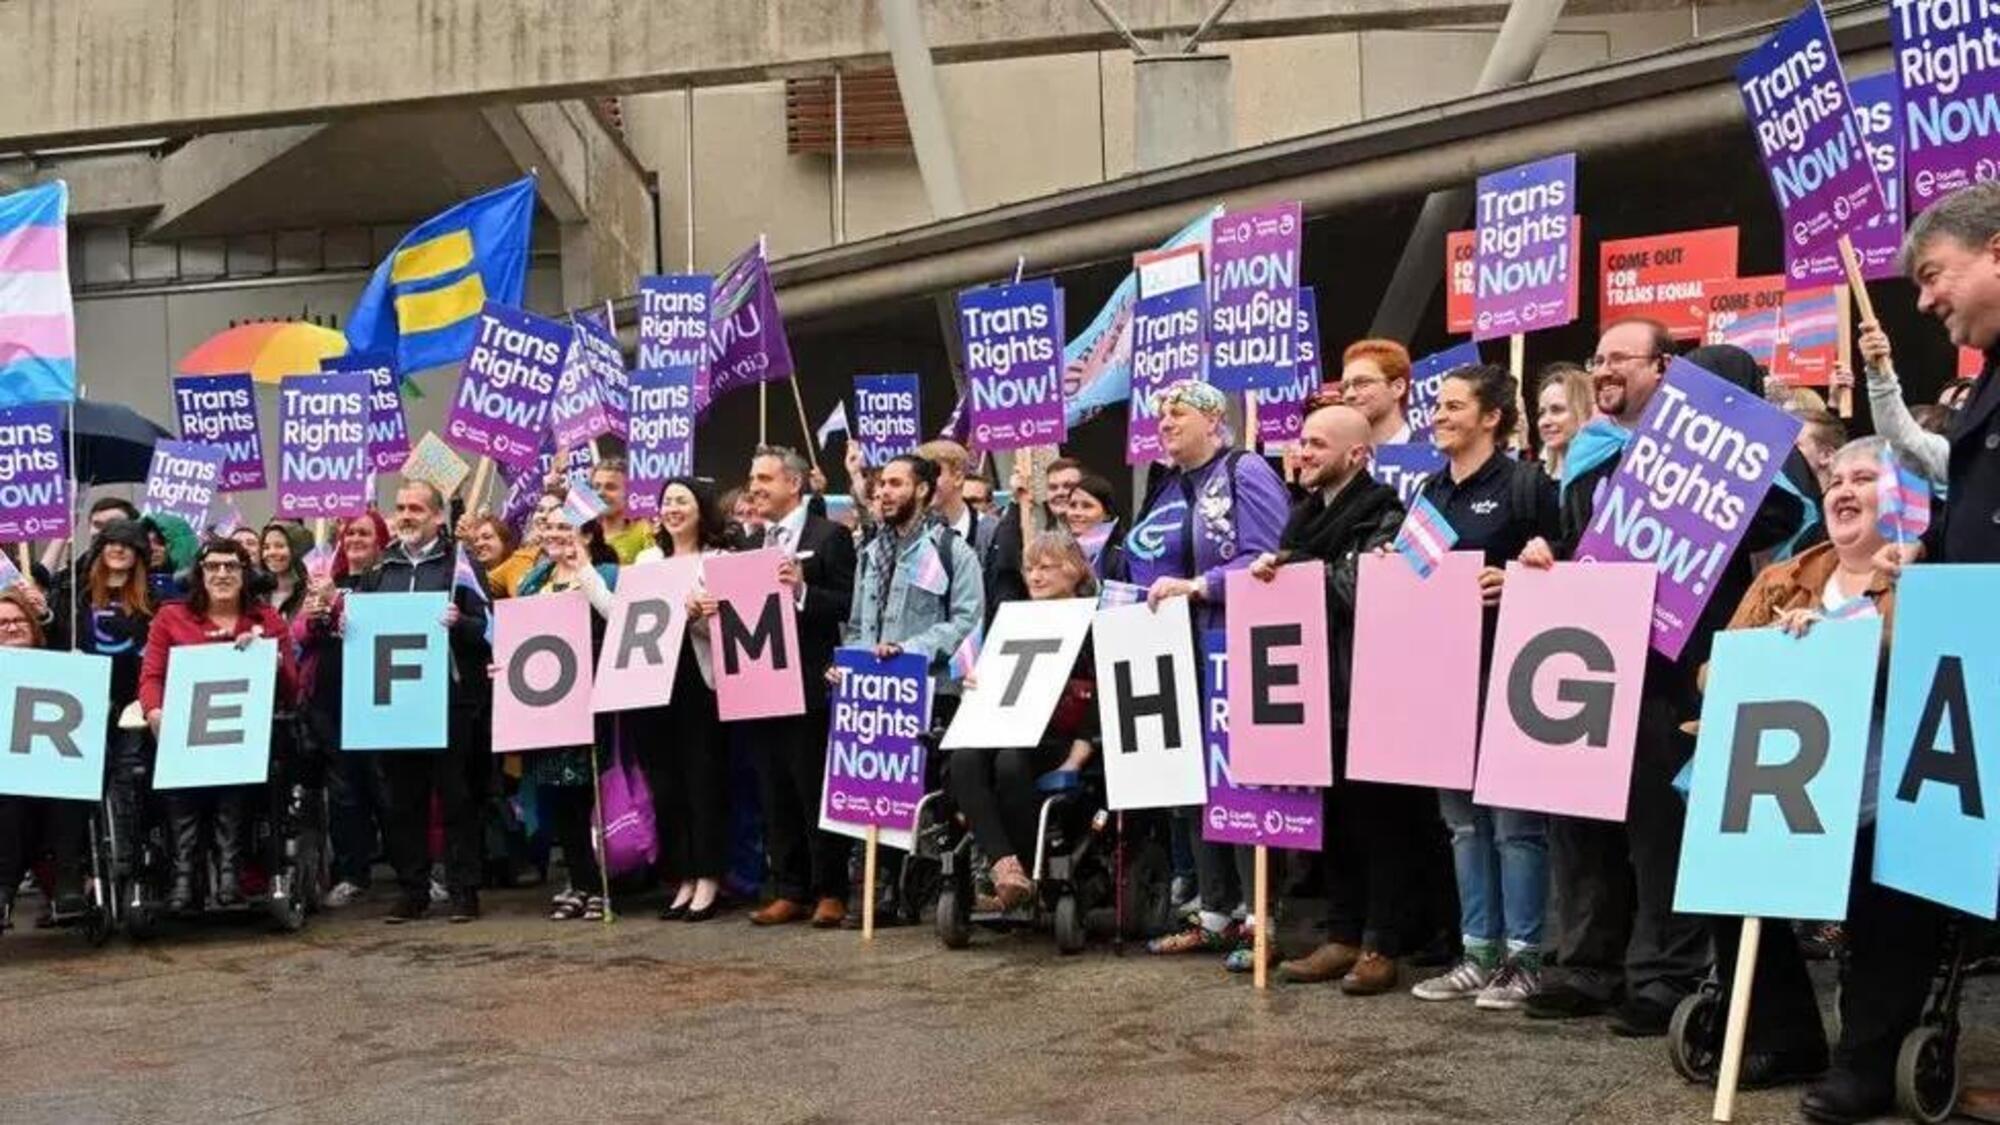 Attivisti per i diritti trans radunati fuori da Holyrood per chiedere riforme inclusive